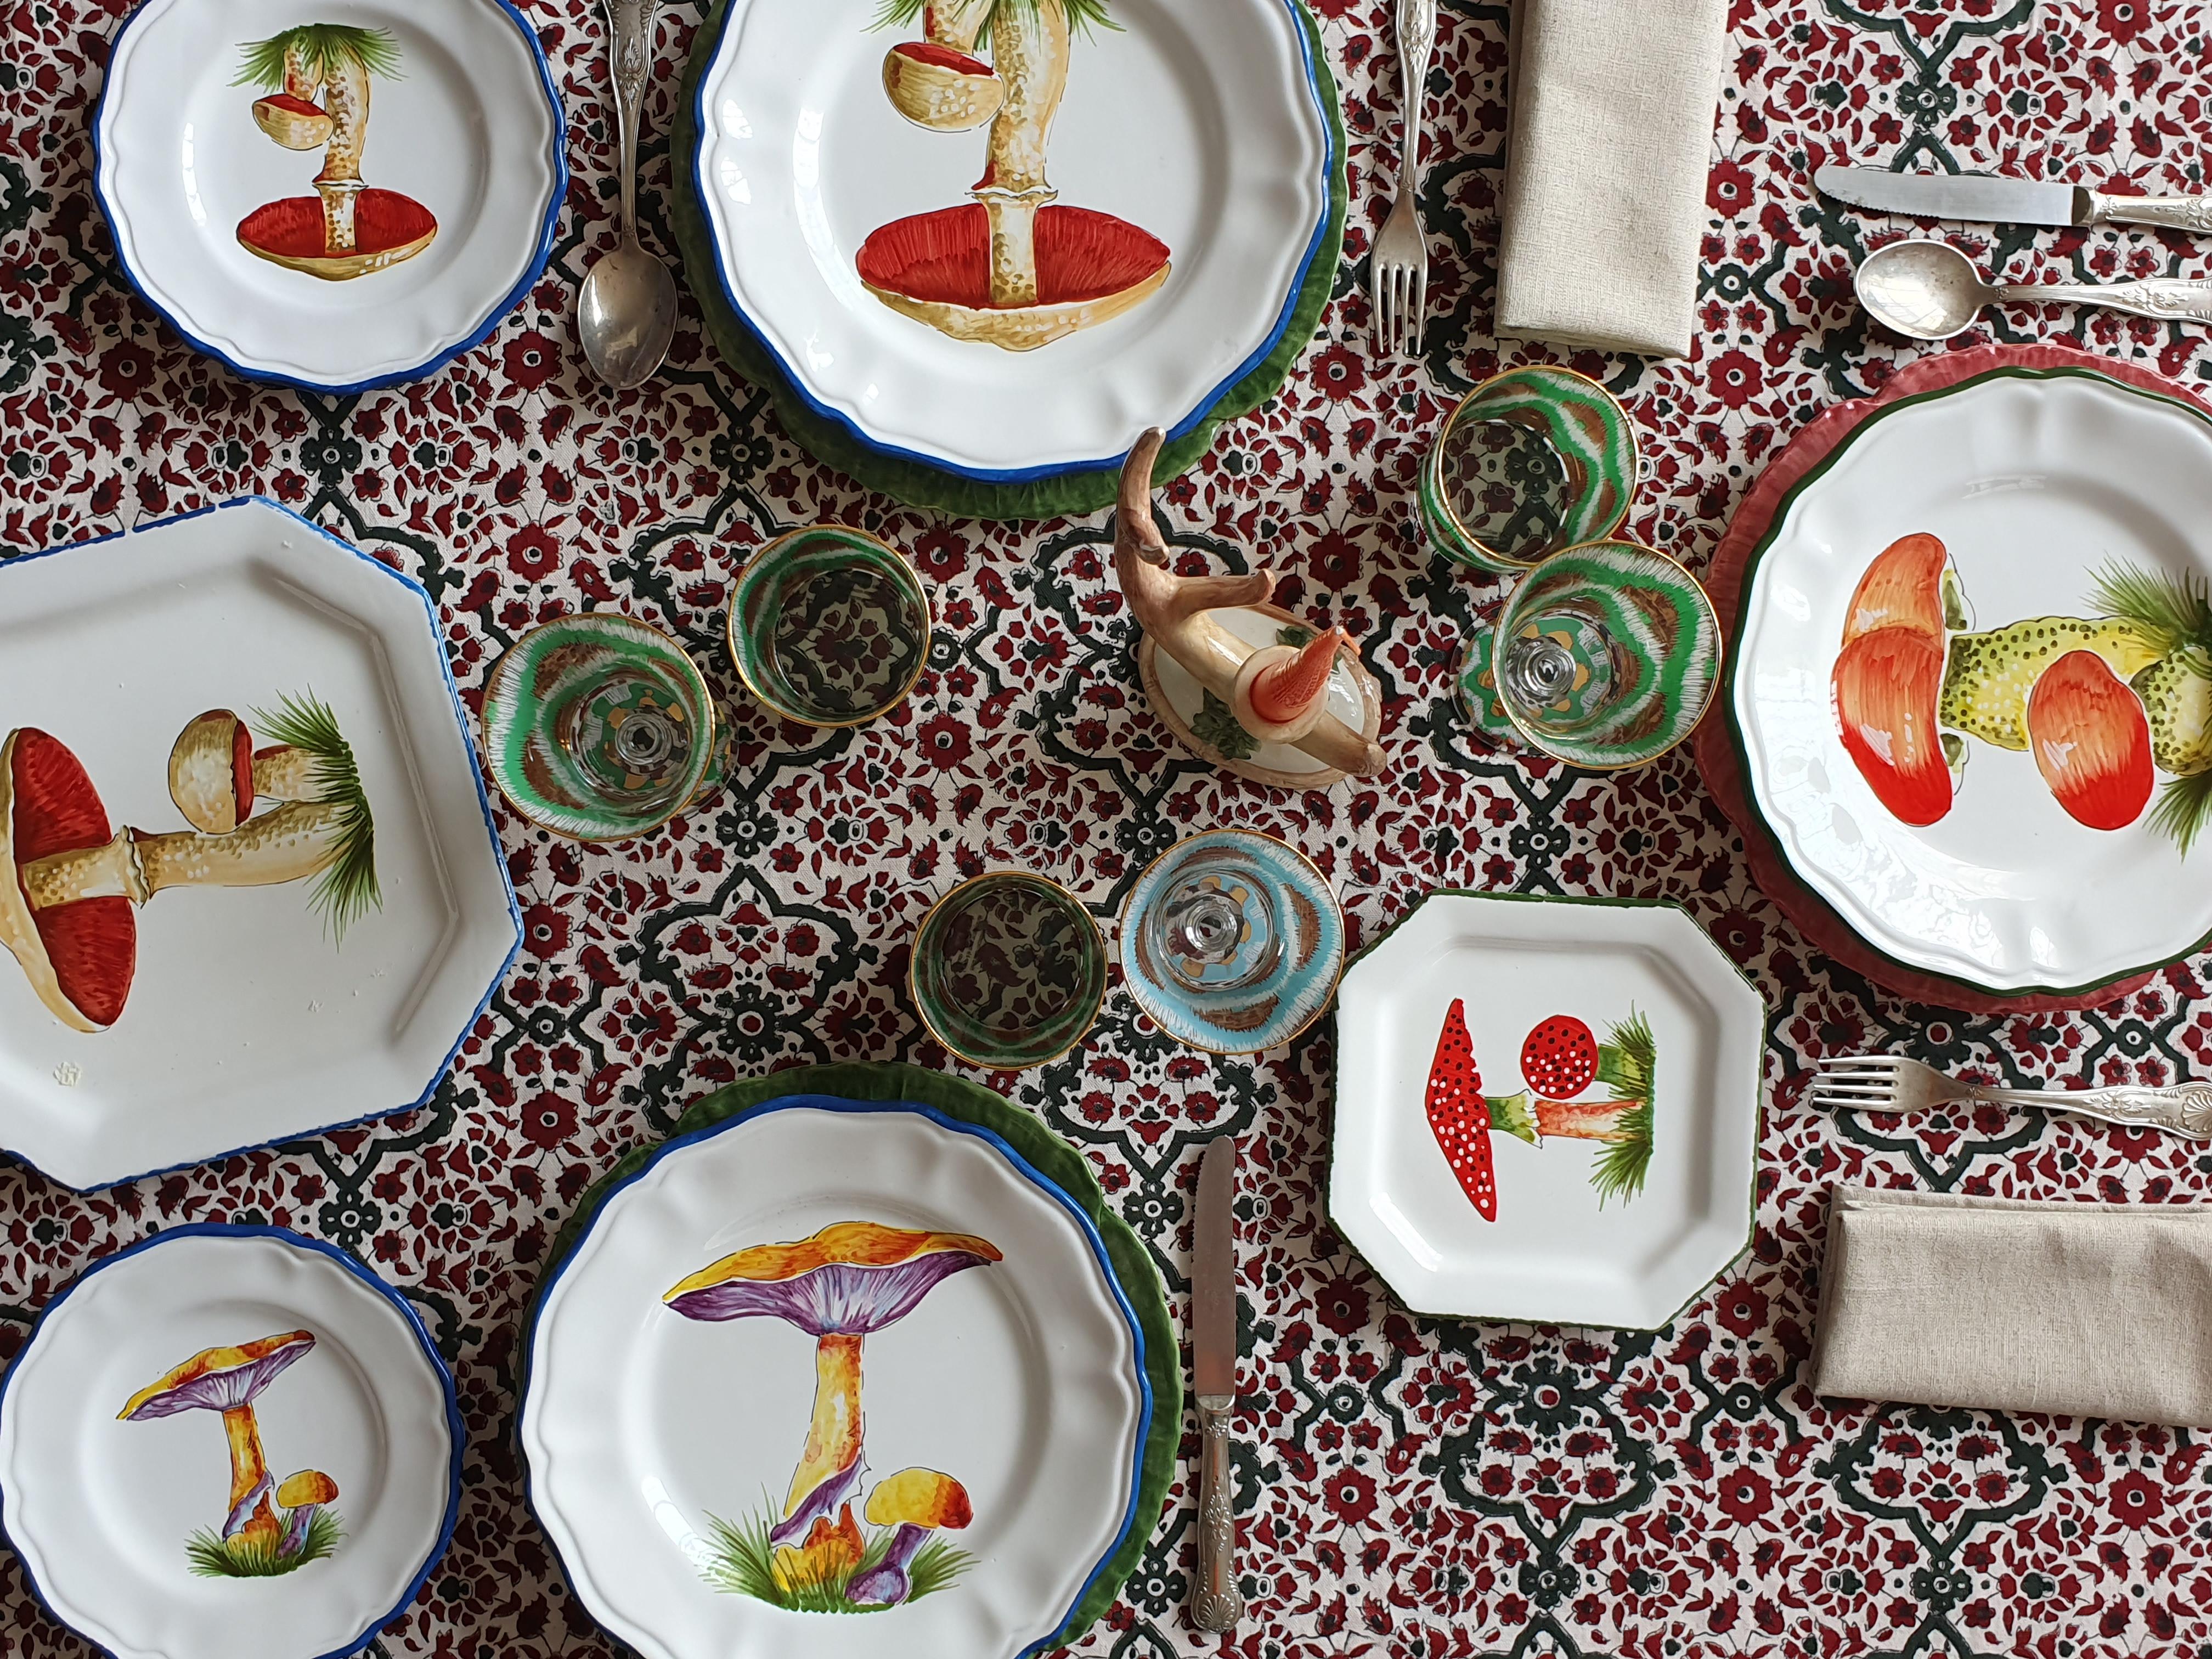 La artesanía italiana se une a Les Ottomans en esta preciosa colección de platos pintados a mano con forma de seta
El encanto de las maderas en tu mesa en una colección única y especial creada por Bertrando Di Renzo y elaborada por artesanos